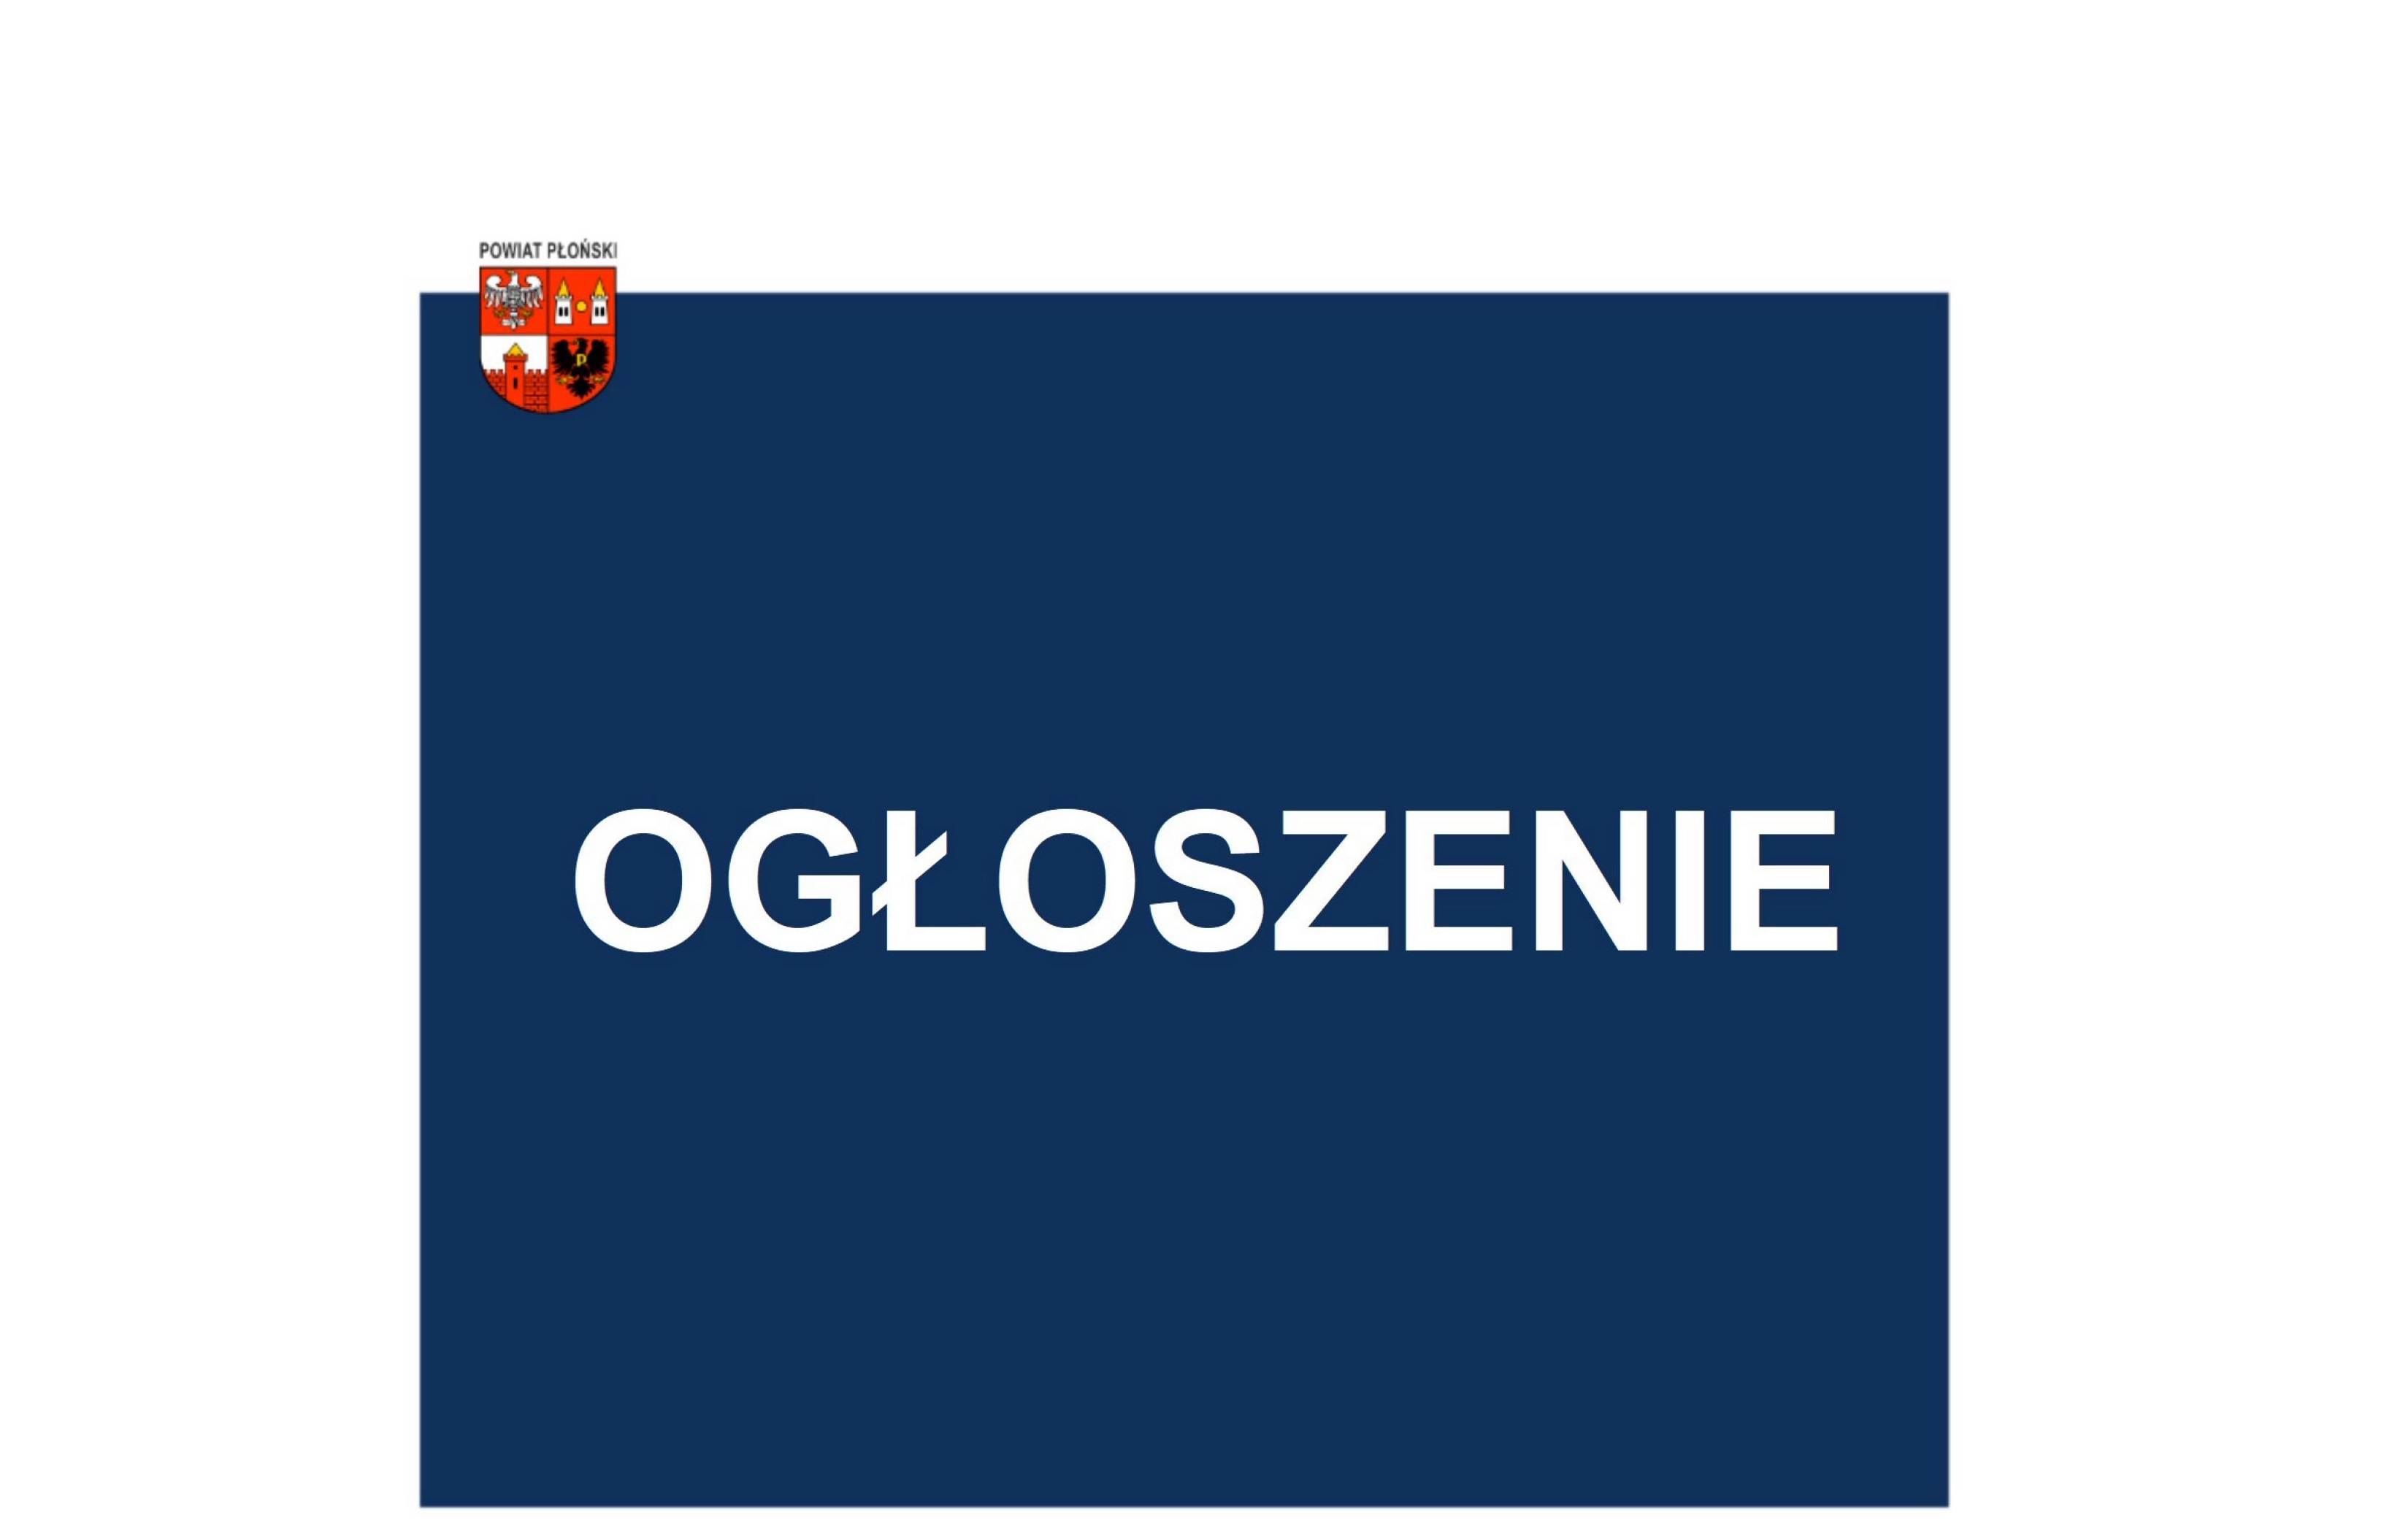 plakat z tekstem ogłoszenie i herbem powiatu płońskiego._01.jpg